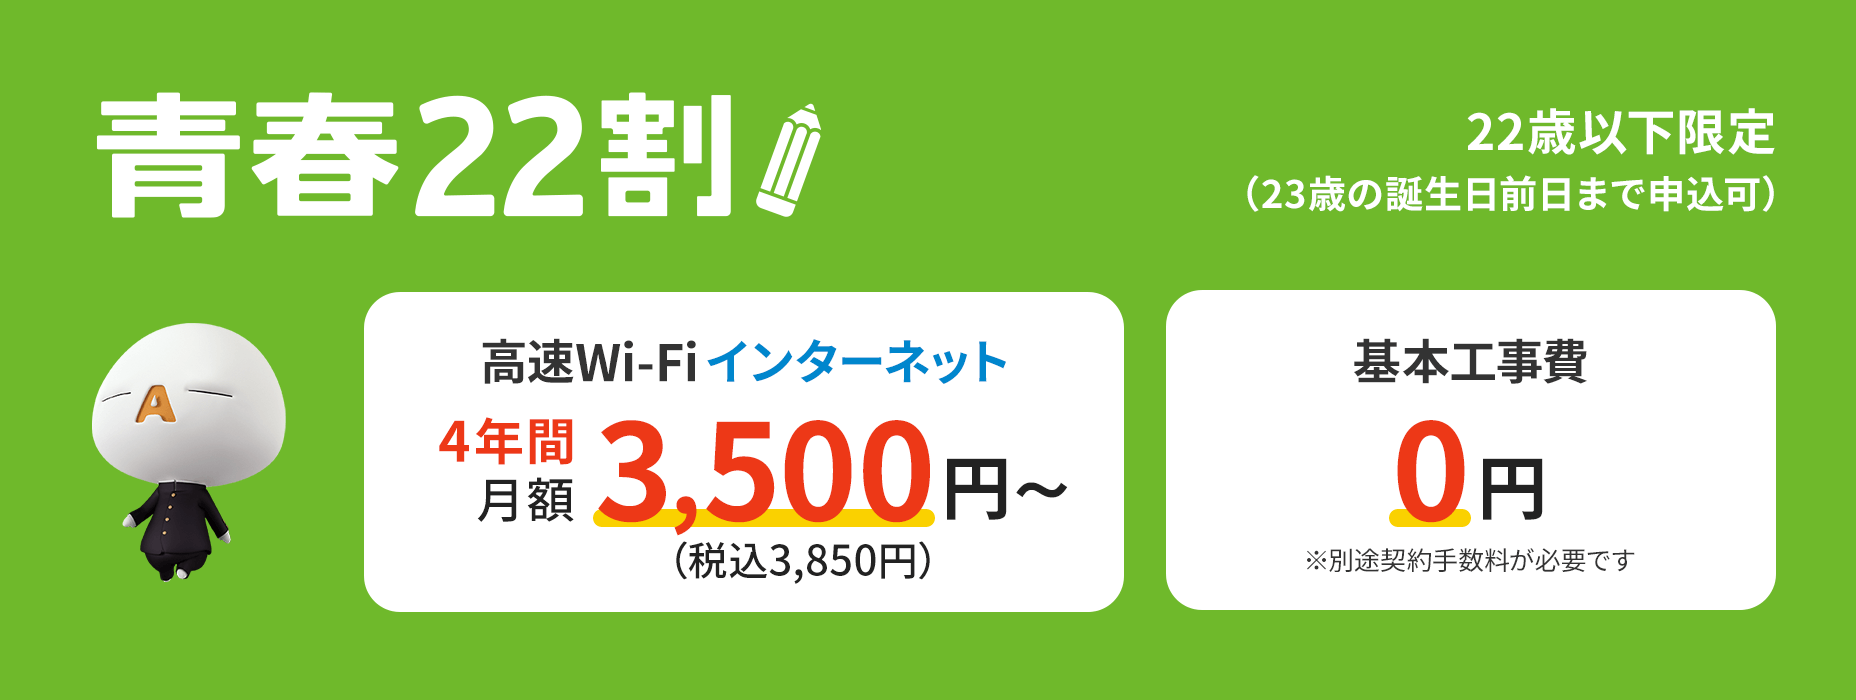 Chỉ dành cho sinh viên đại học và dạy nghề sống trong khu phức hợp nhà ở J:COM Seishun 22 Wari, Internet Wi-Fi tốc độ cao luôn có sẵn trong tối đa 4 năm!